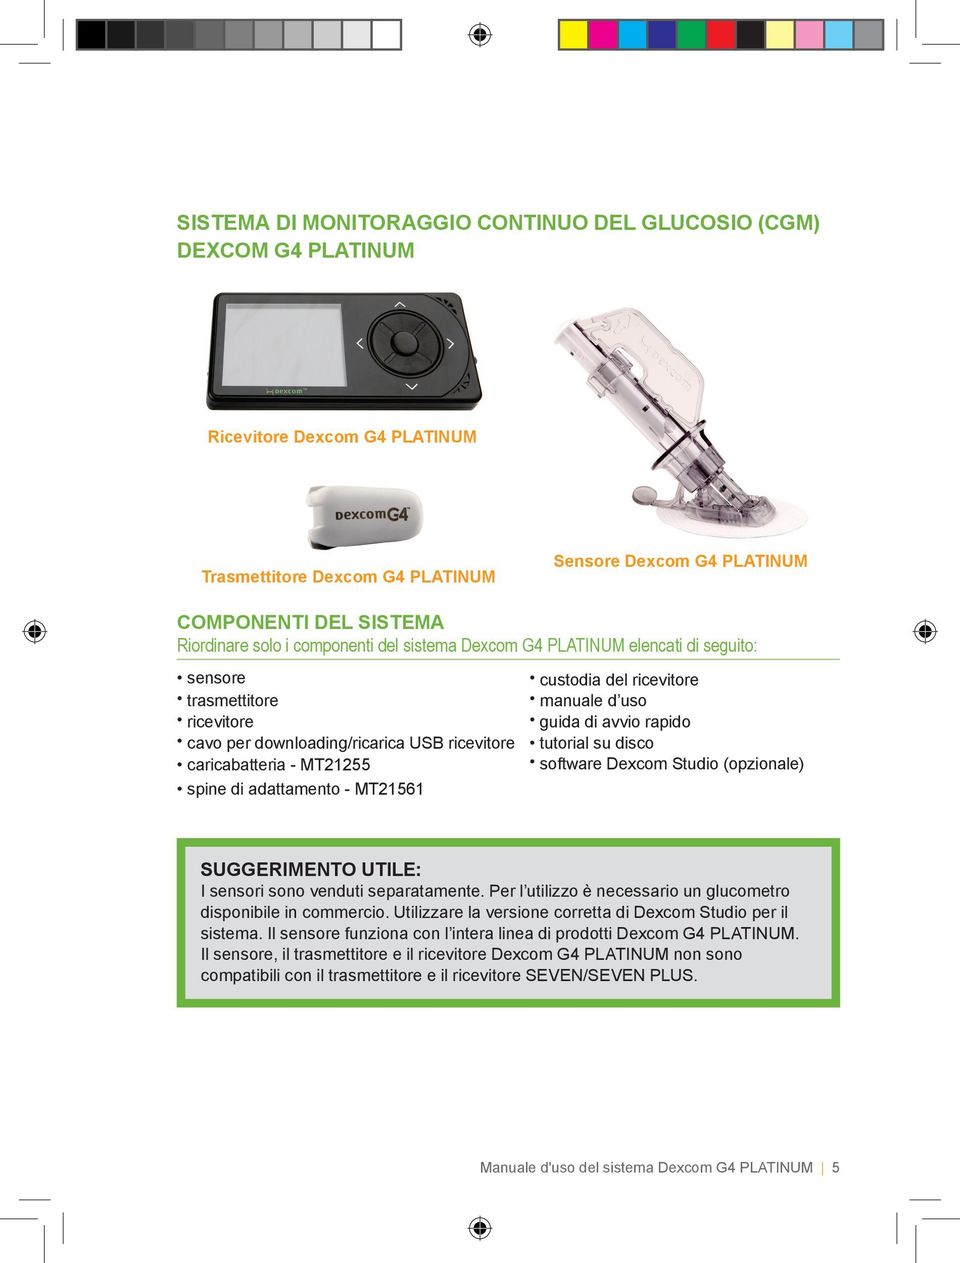 custodia del ricevitore manuale d uso guida di avvio rapido tutorial su disco software Dexcom Studio (opzionale) SUGGERIMENTO UTILE: I sensori sono venduti separatamente.